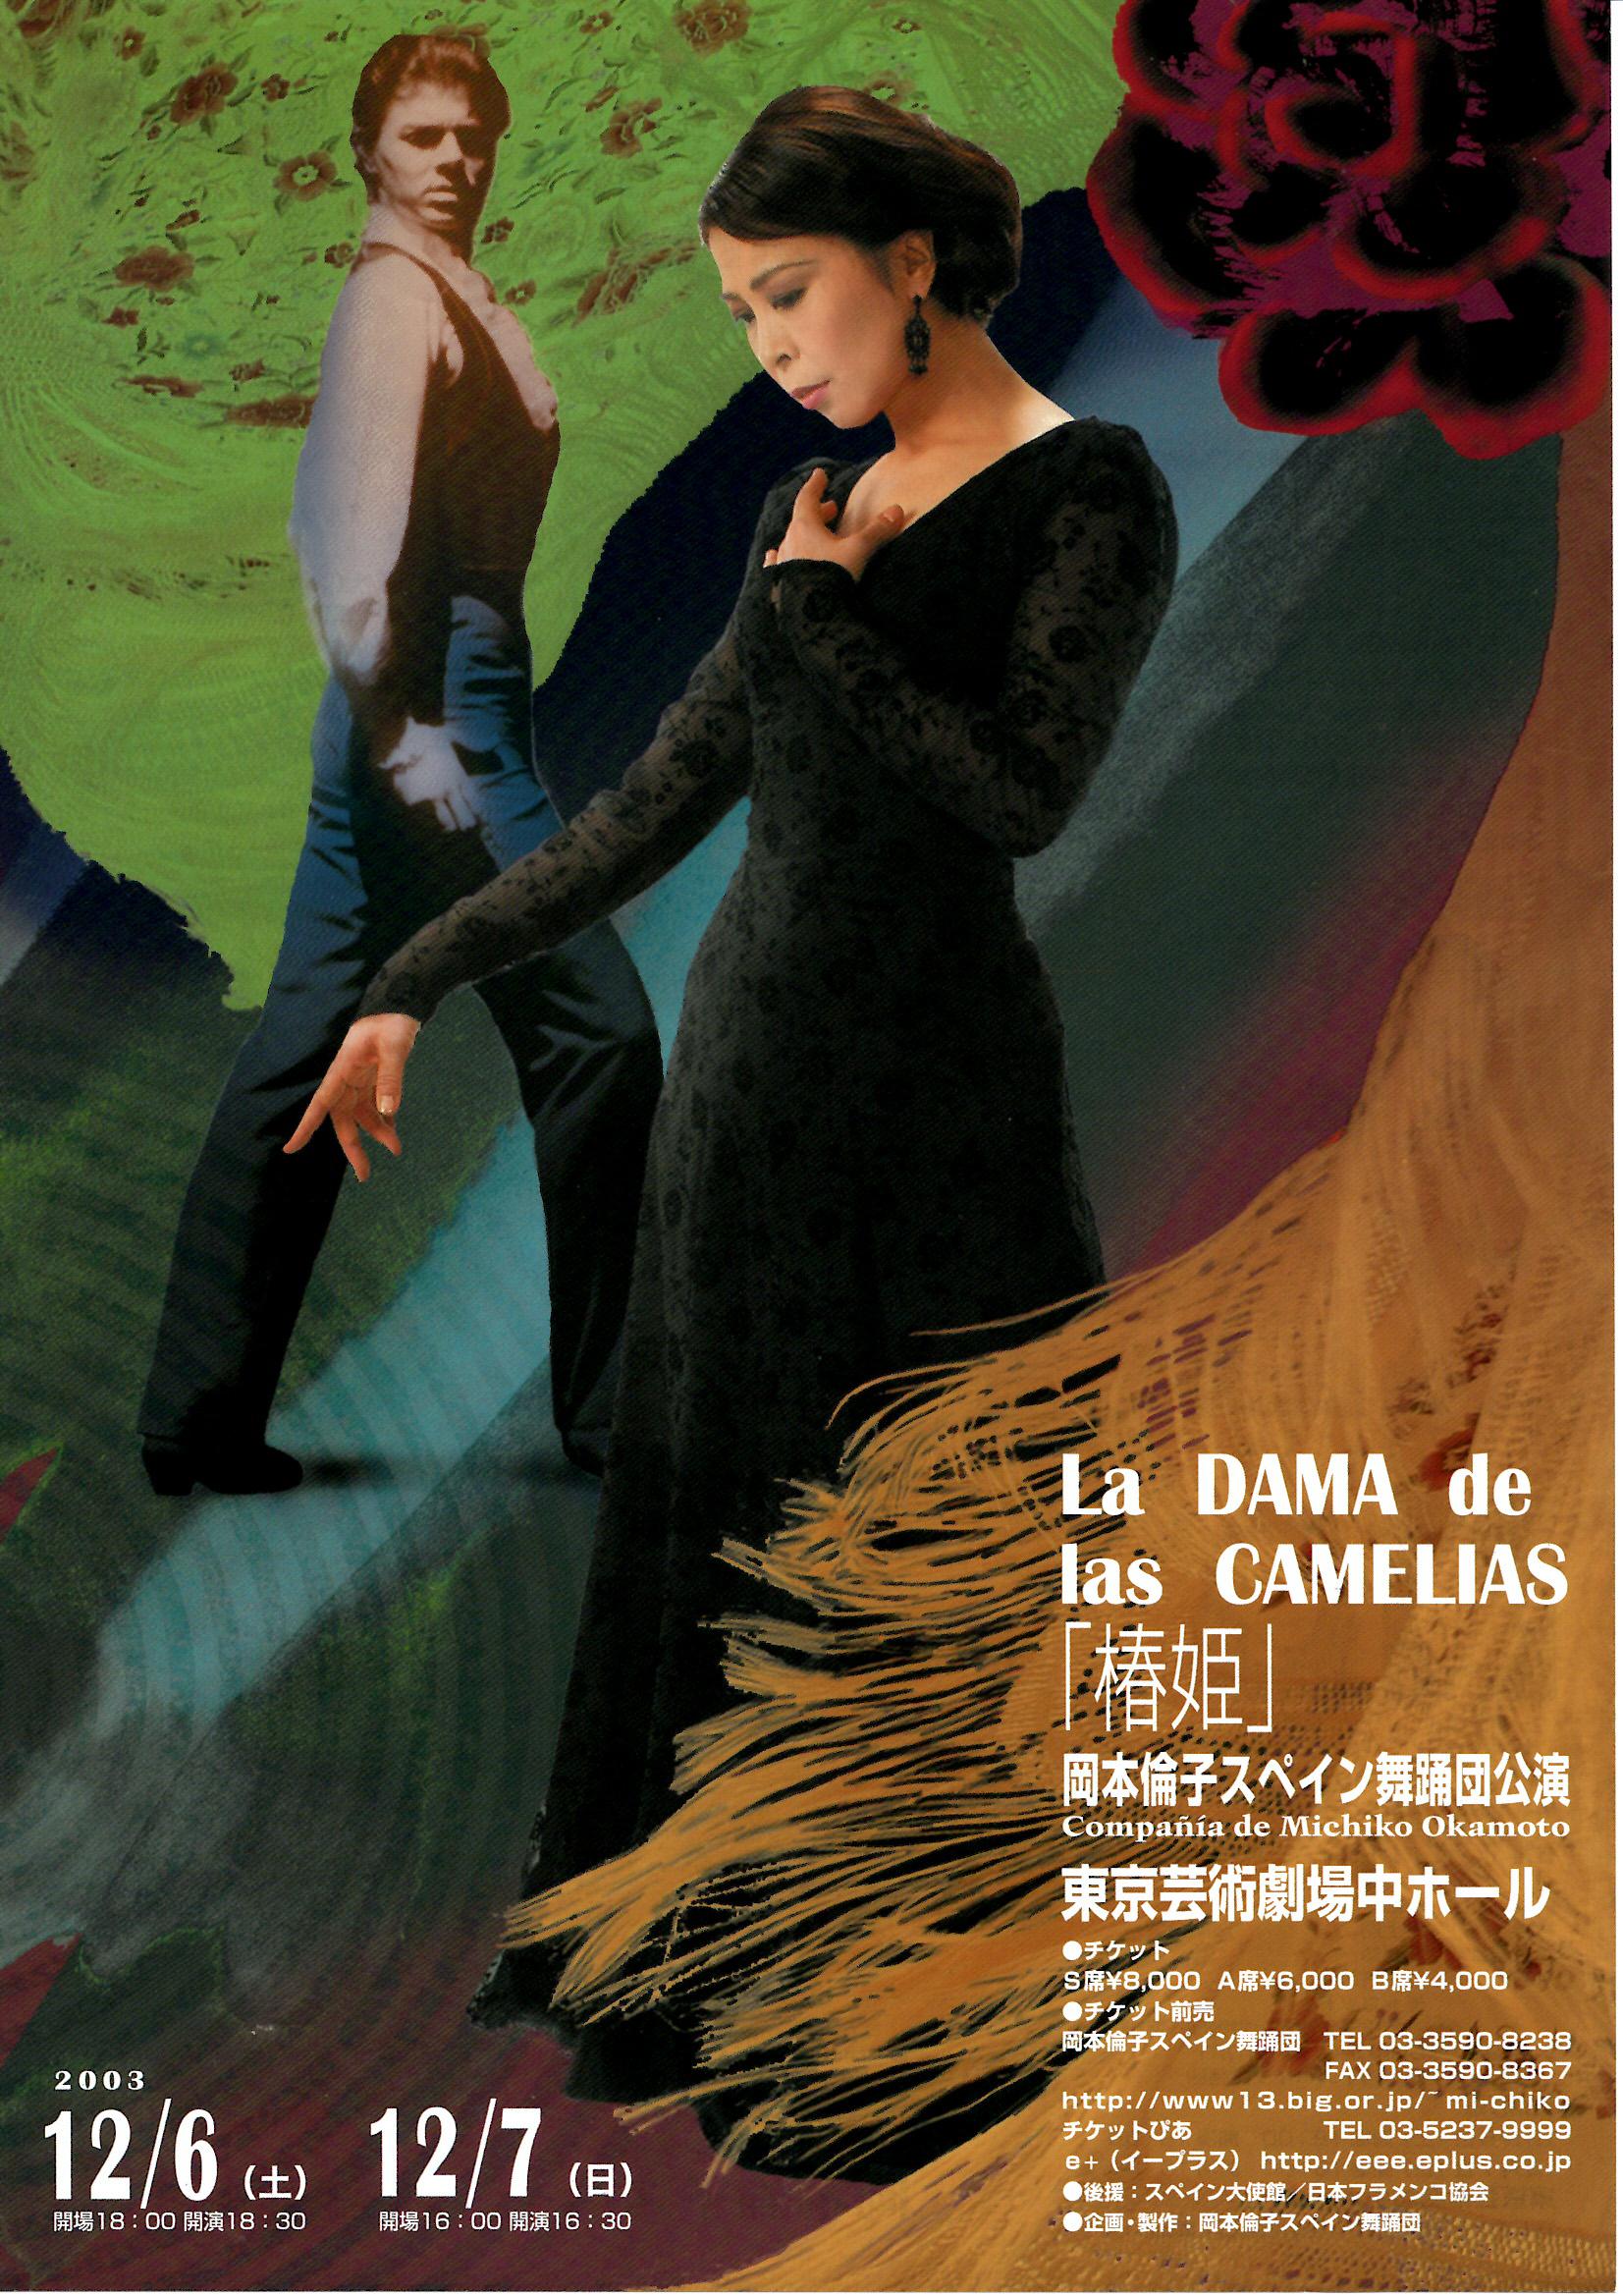 2003年「椿姫」La DAMA de las CAMELIAS